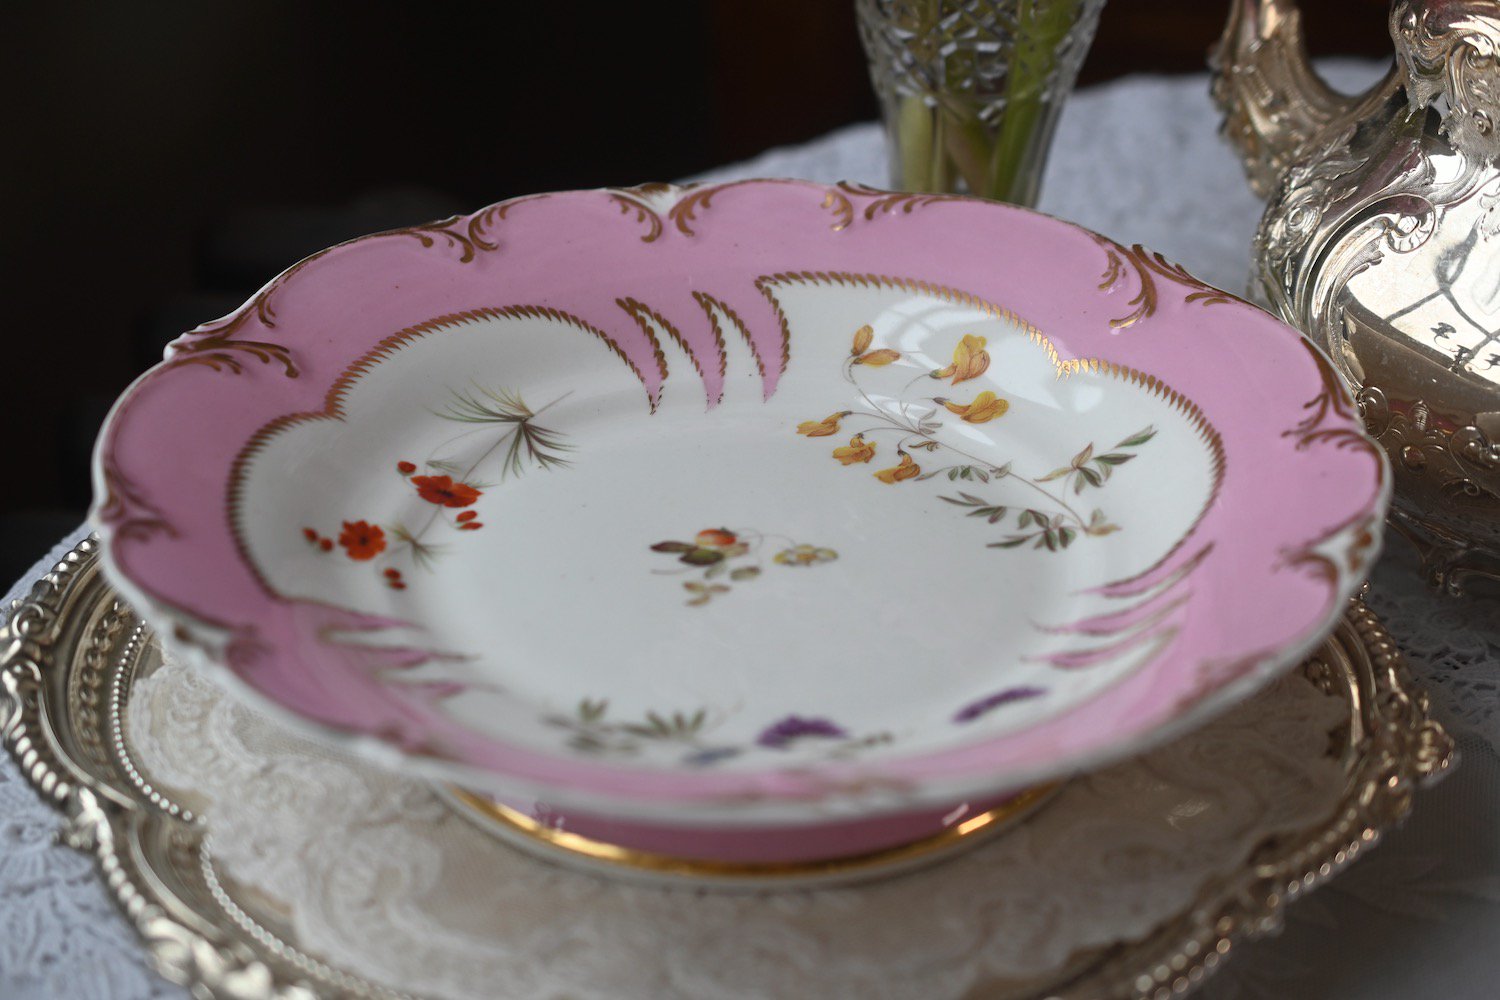 １８４０年代・H&Rダニエル・優しいピンク色と手描きのお花たちのサーヴィングディッシュをイギリス コッツウォルズよりお届けいたします。